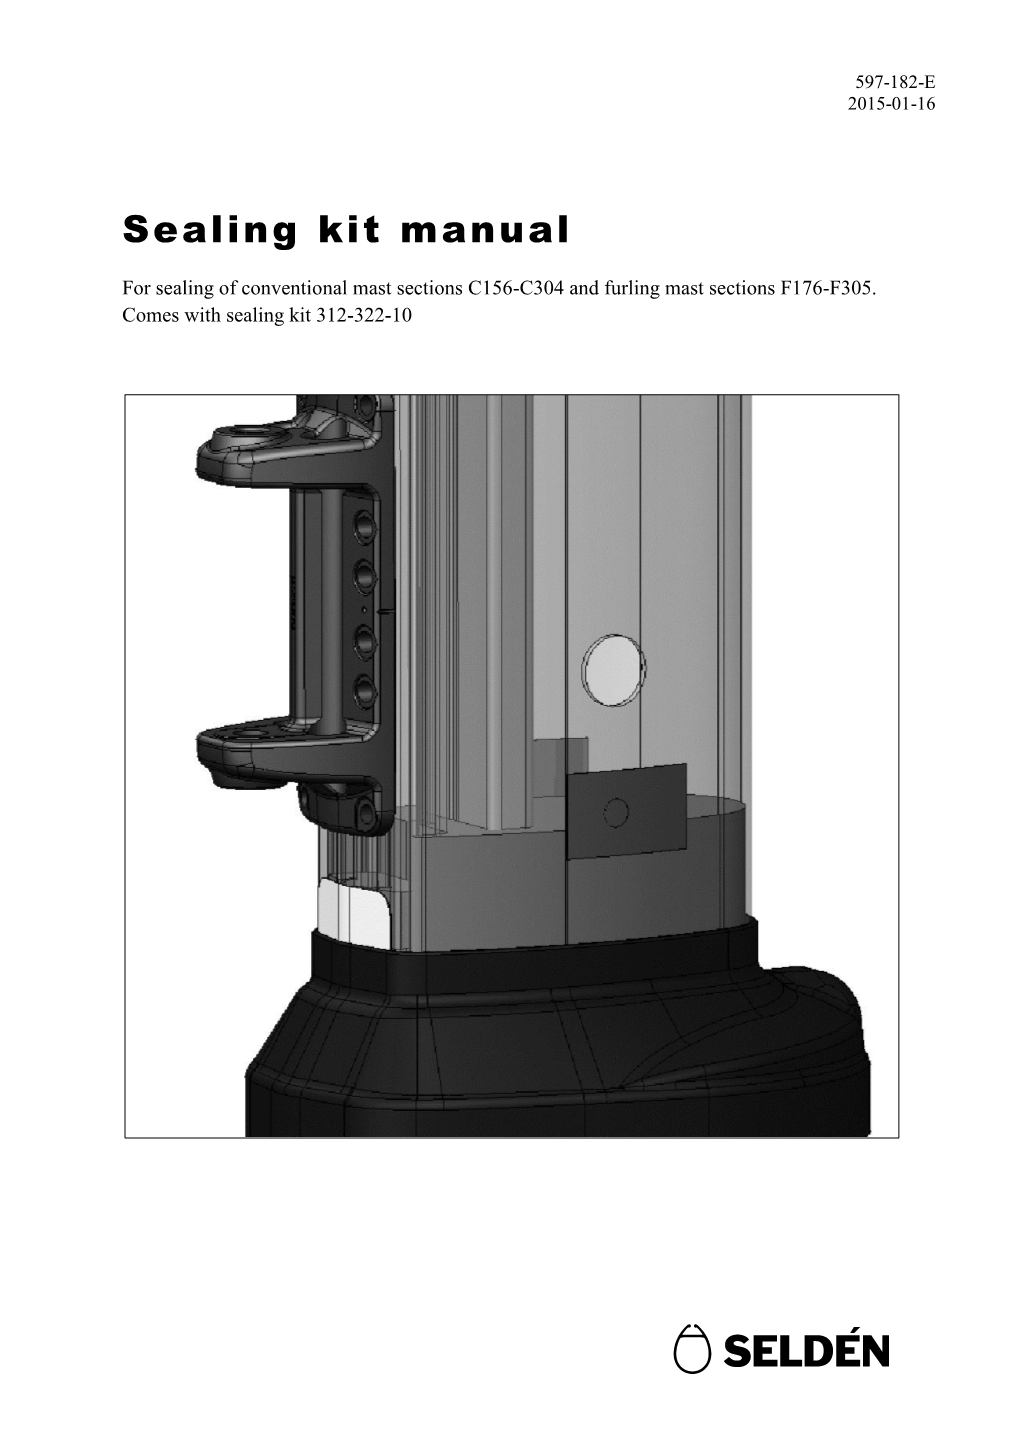 Sealing Kit Manual